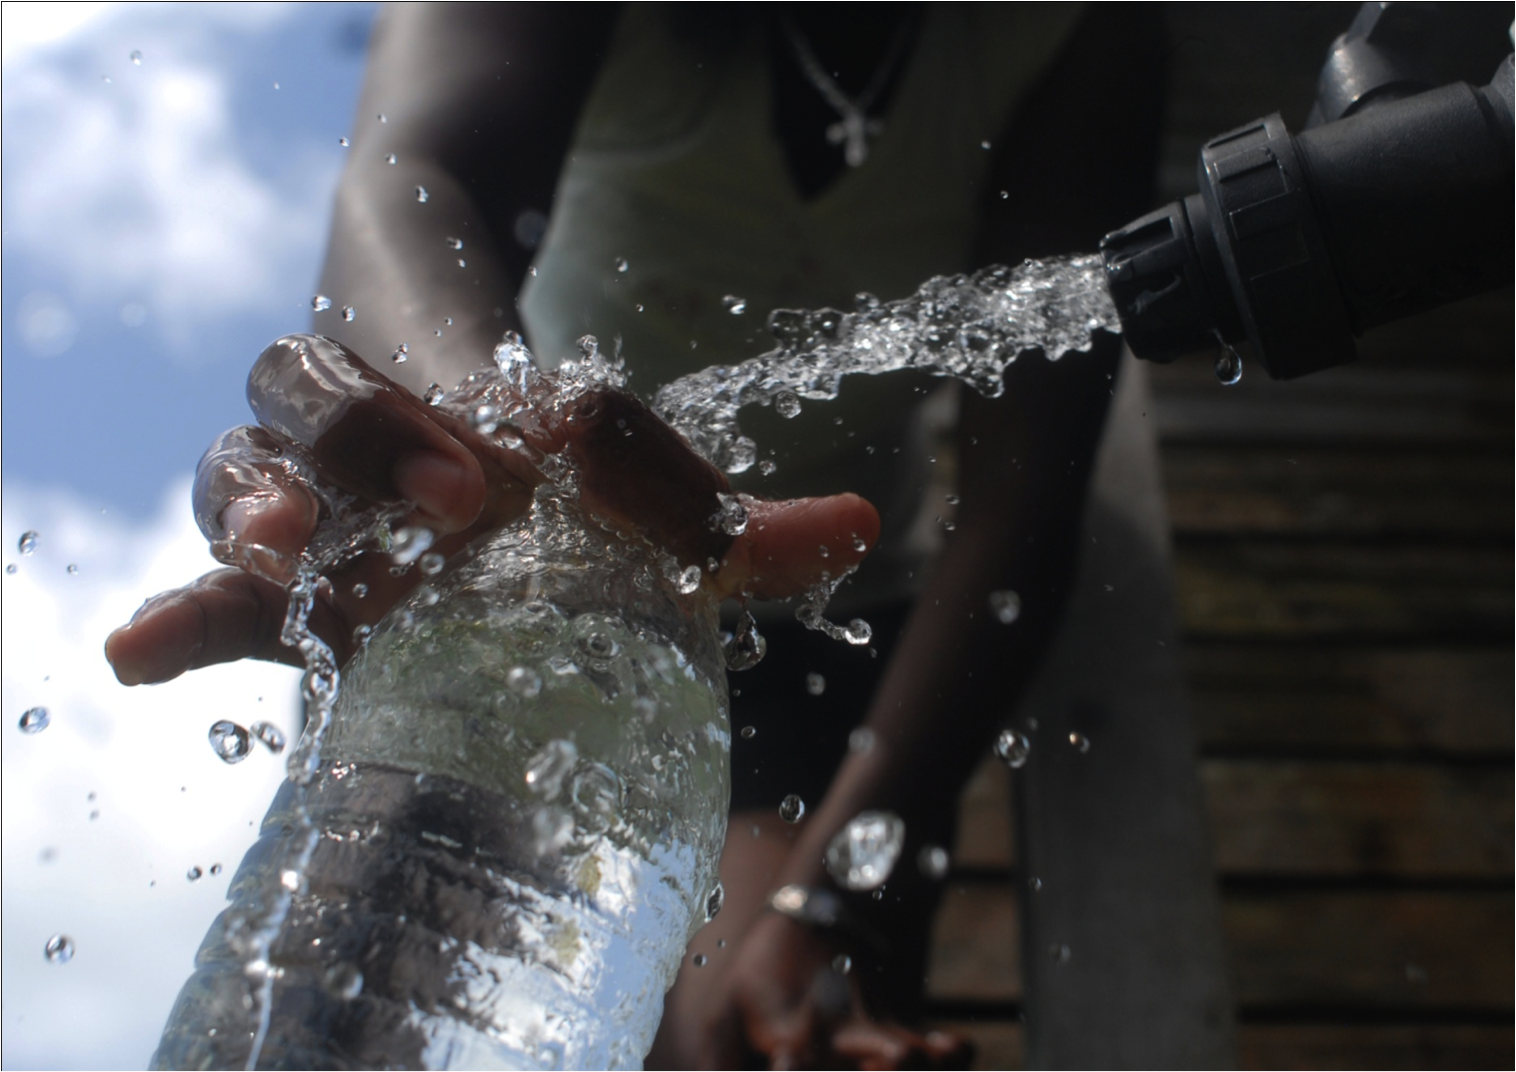 Se desplegaron sistemas de agua potable, “kioscos de agua”, en diversas comunidades rurales de los estados de Tabasco, Chiapas y Veracruz